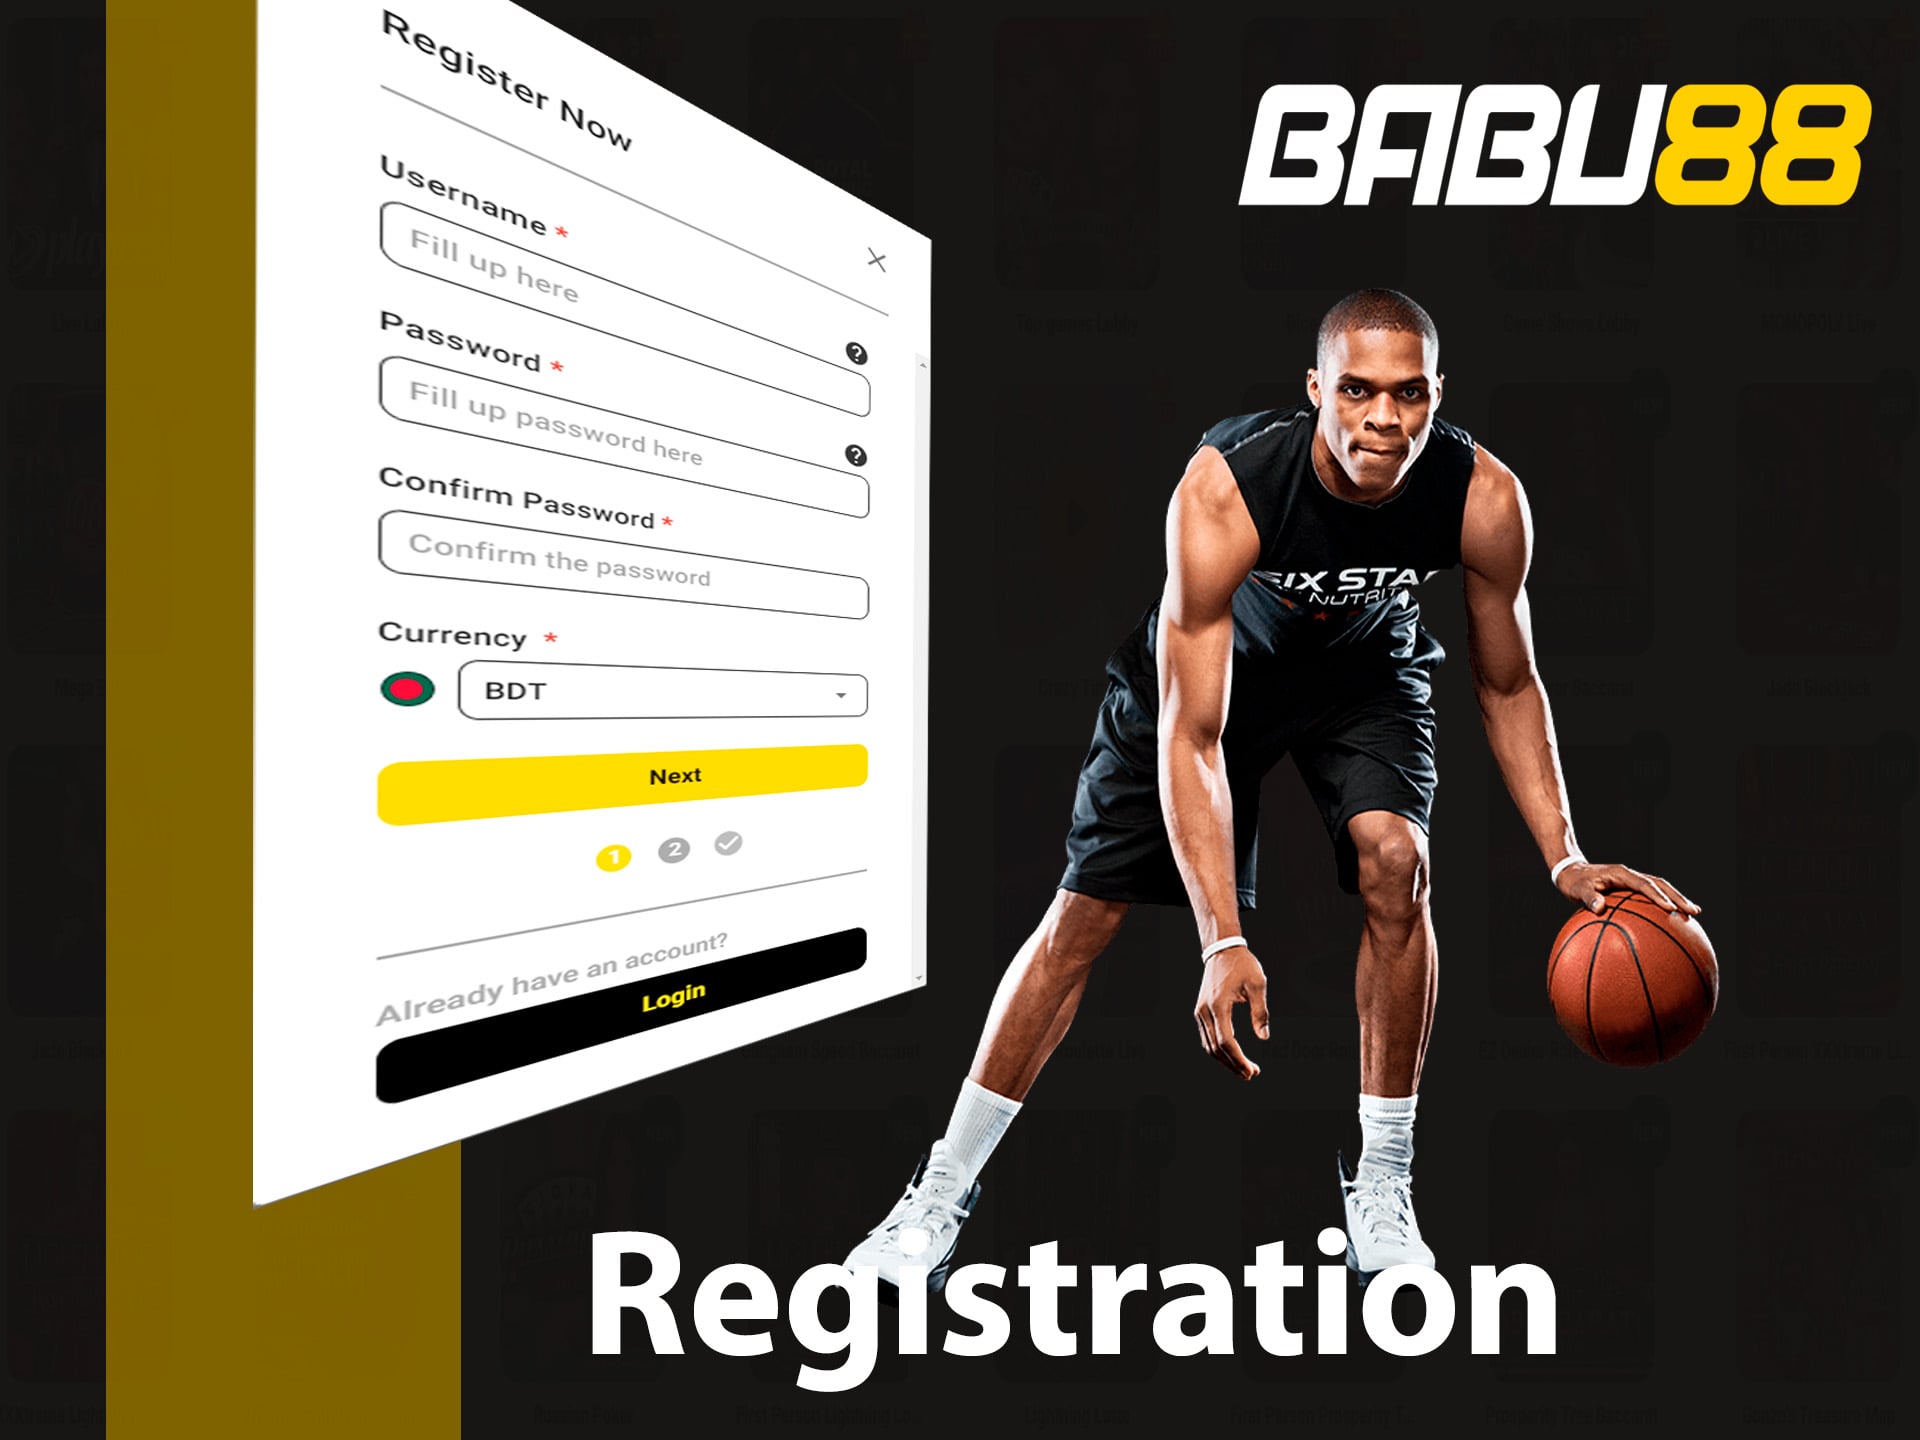 babu88 registration